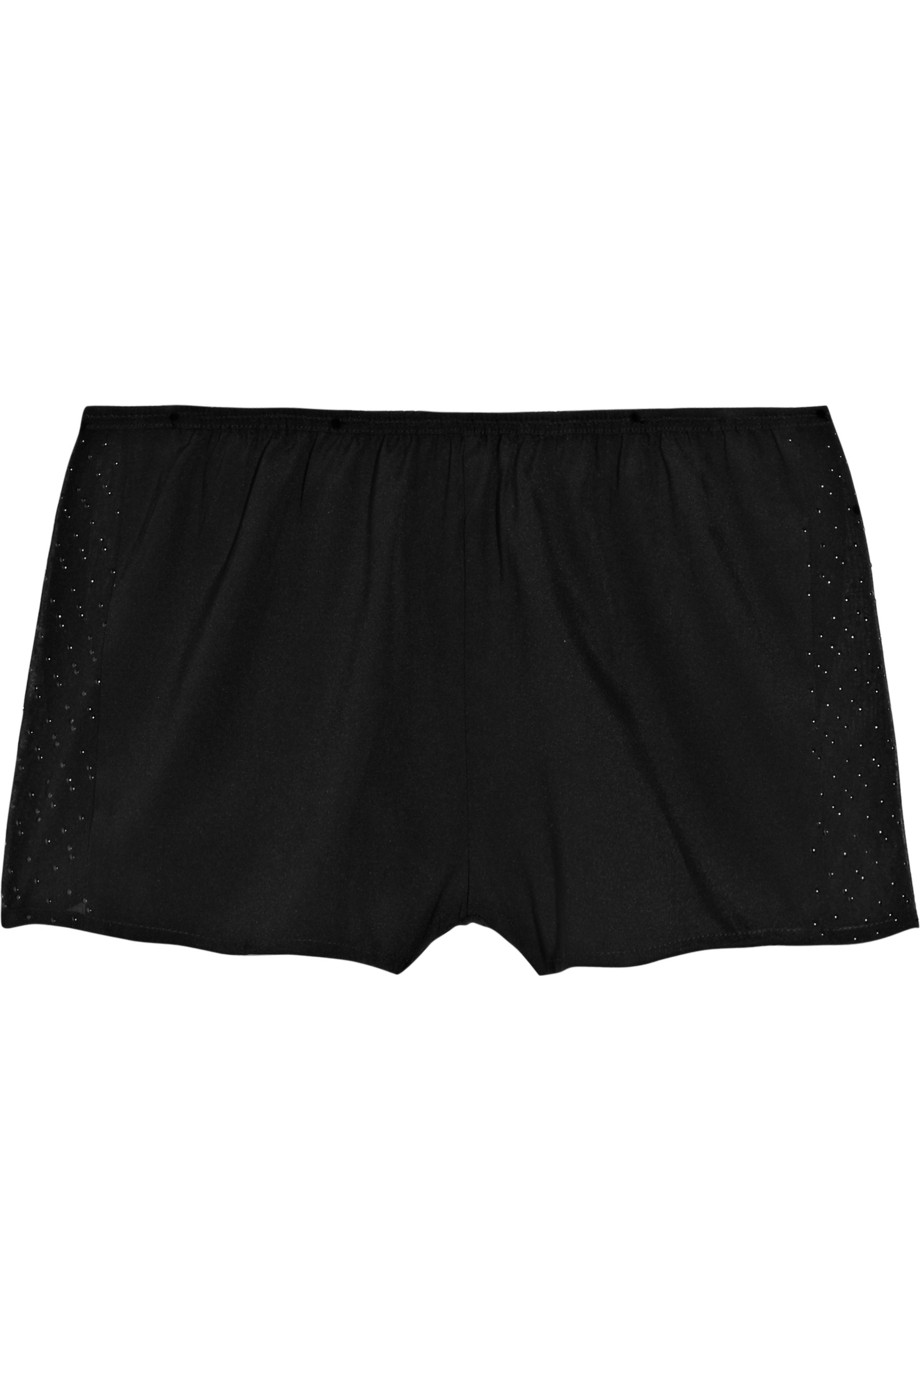 3.1 Phillip Lim Embellished Stretch-silk Boy Shorts in Black | Lyst